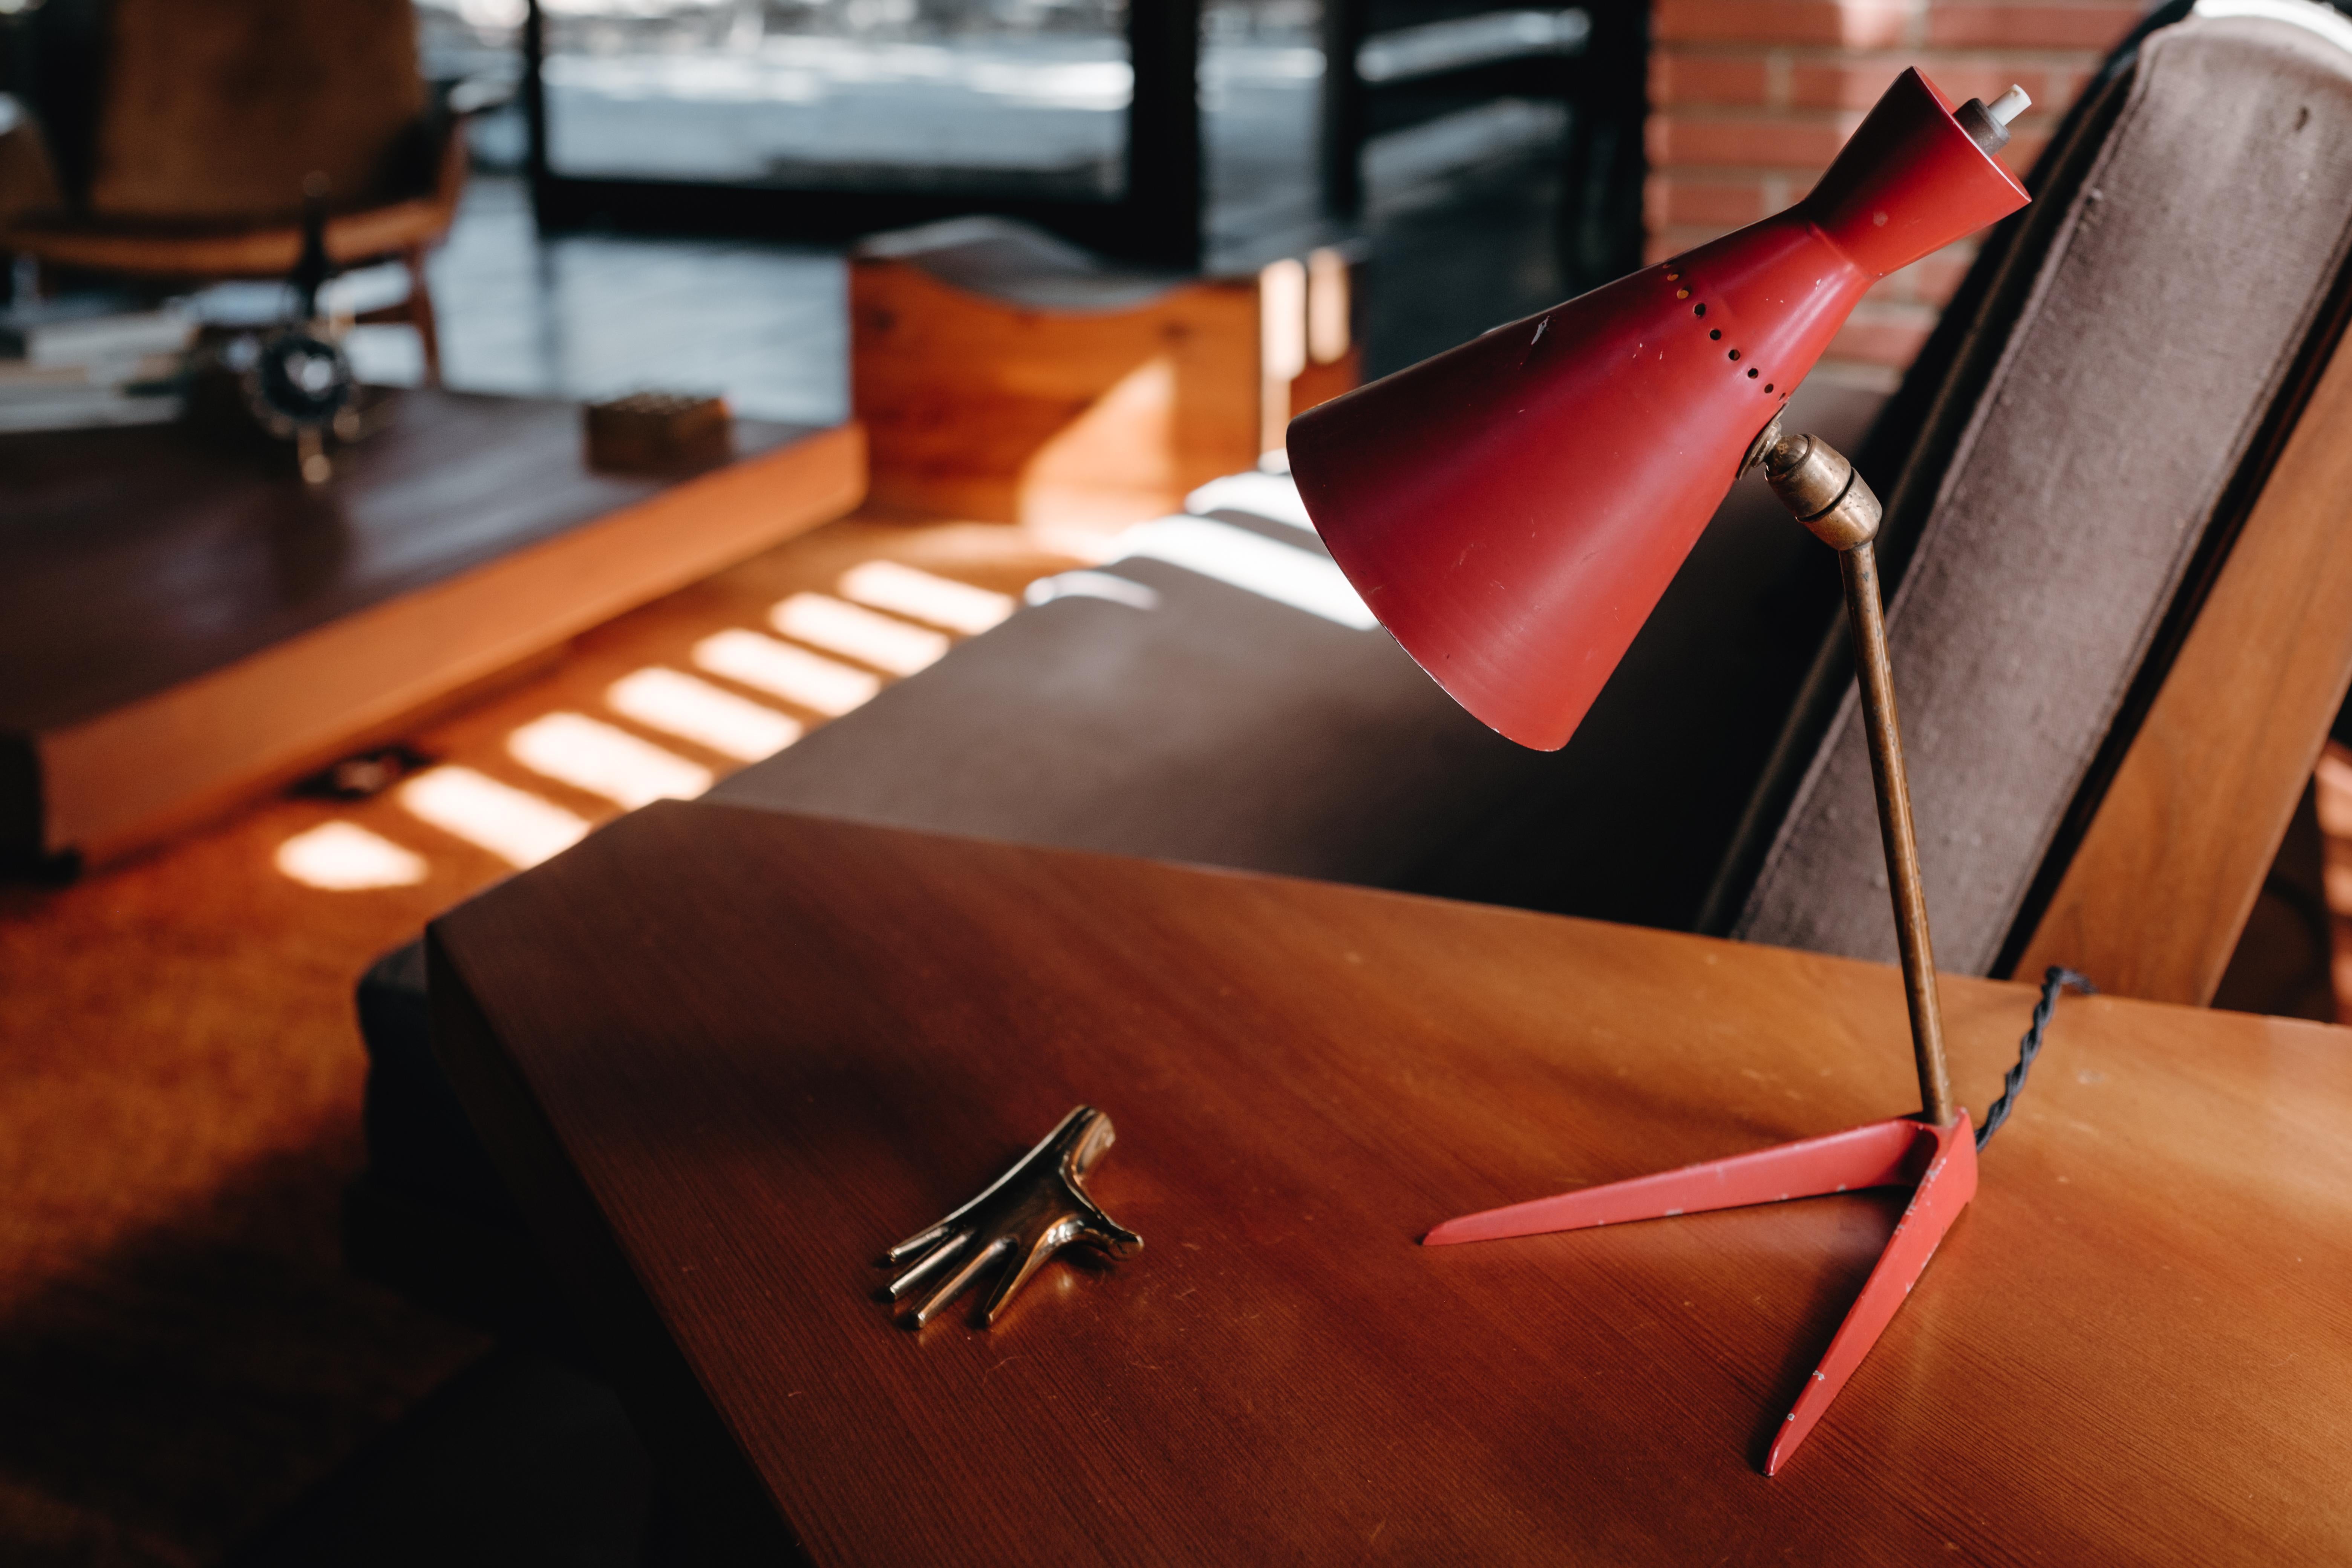 1950er Stilux Milano Tischlampe aus rotem Metall und Holz. Ausgeführt in rot lackiertem Holz, Metall und Messing. An zwei Punkten verstellbarer Schirm für eine flexible Vielfalt an Beleuchtungsmöglichkeiten.

Stilux war in der Mitte des Jahrhunderts